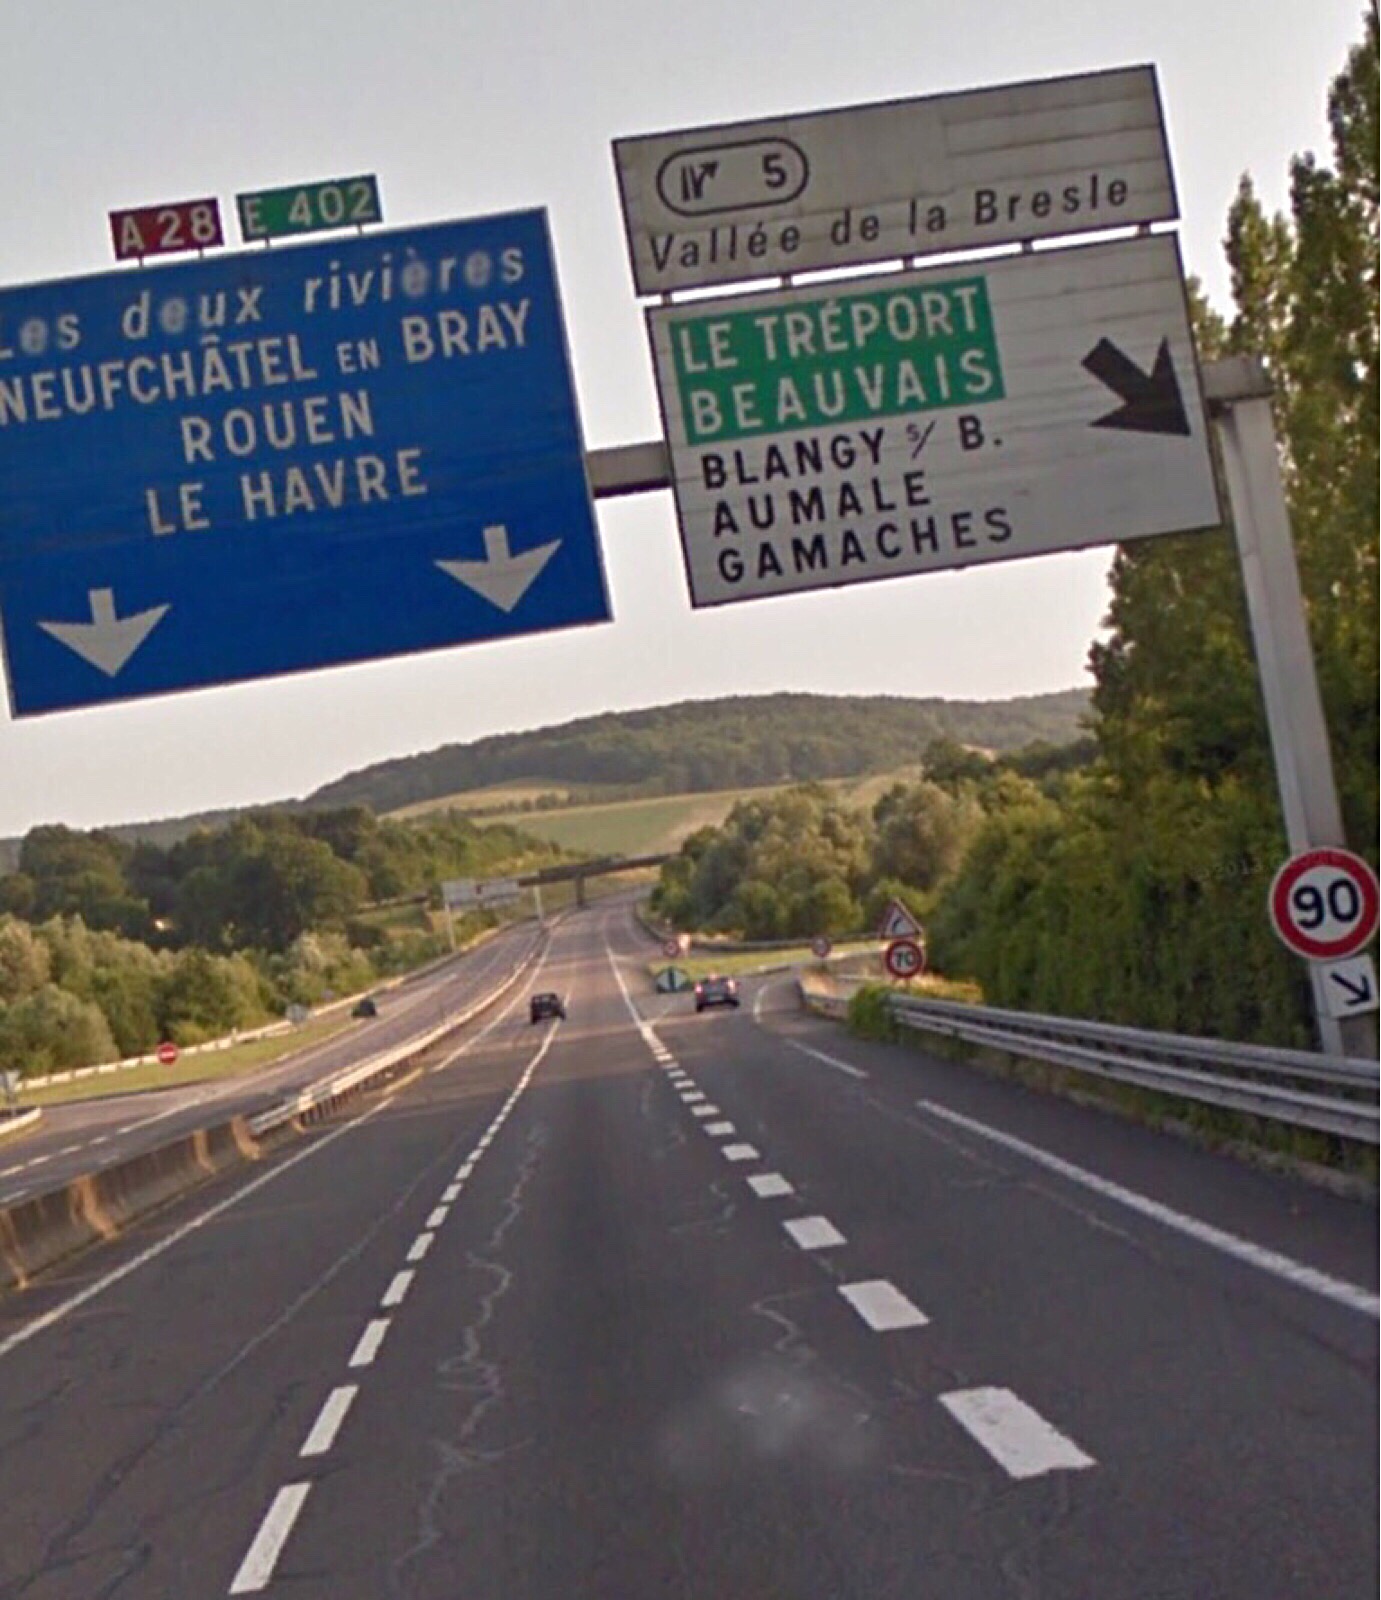 L'A28 fermée et déviée vers Rouen à partir de Blangy-sur-Bresle à la suite d'un accident